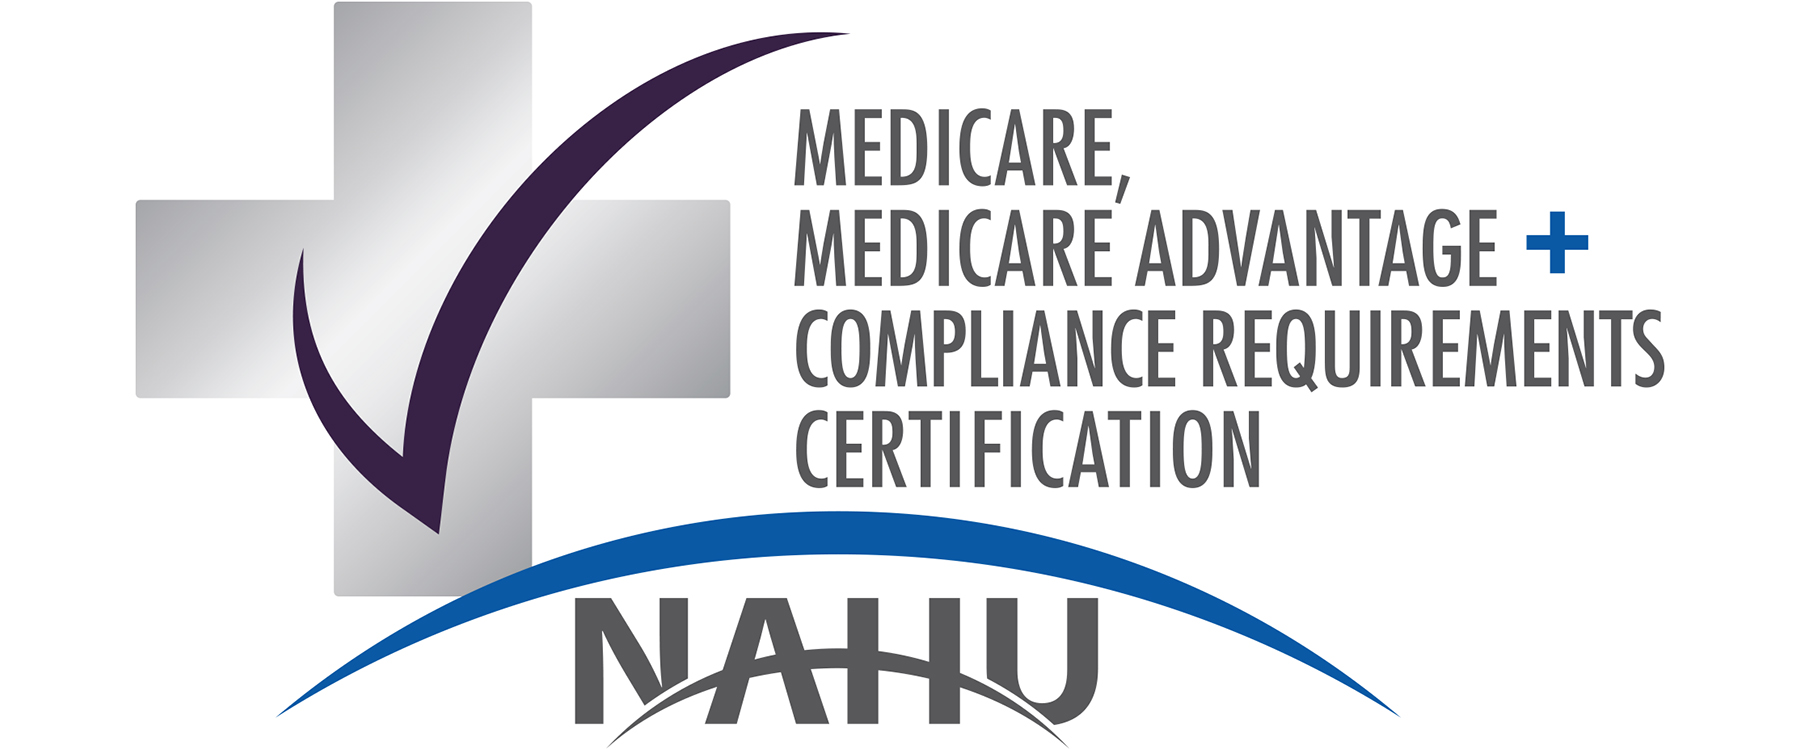 NAHU MMACR Certification Logo1800x750